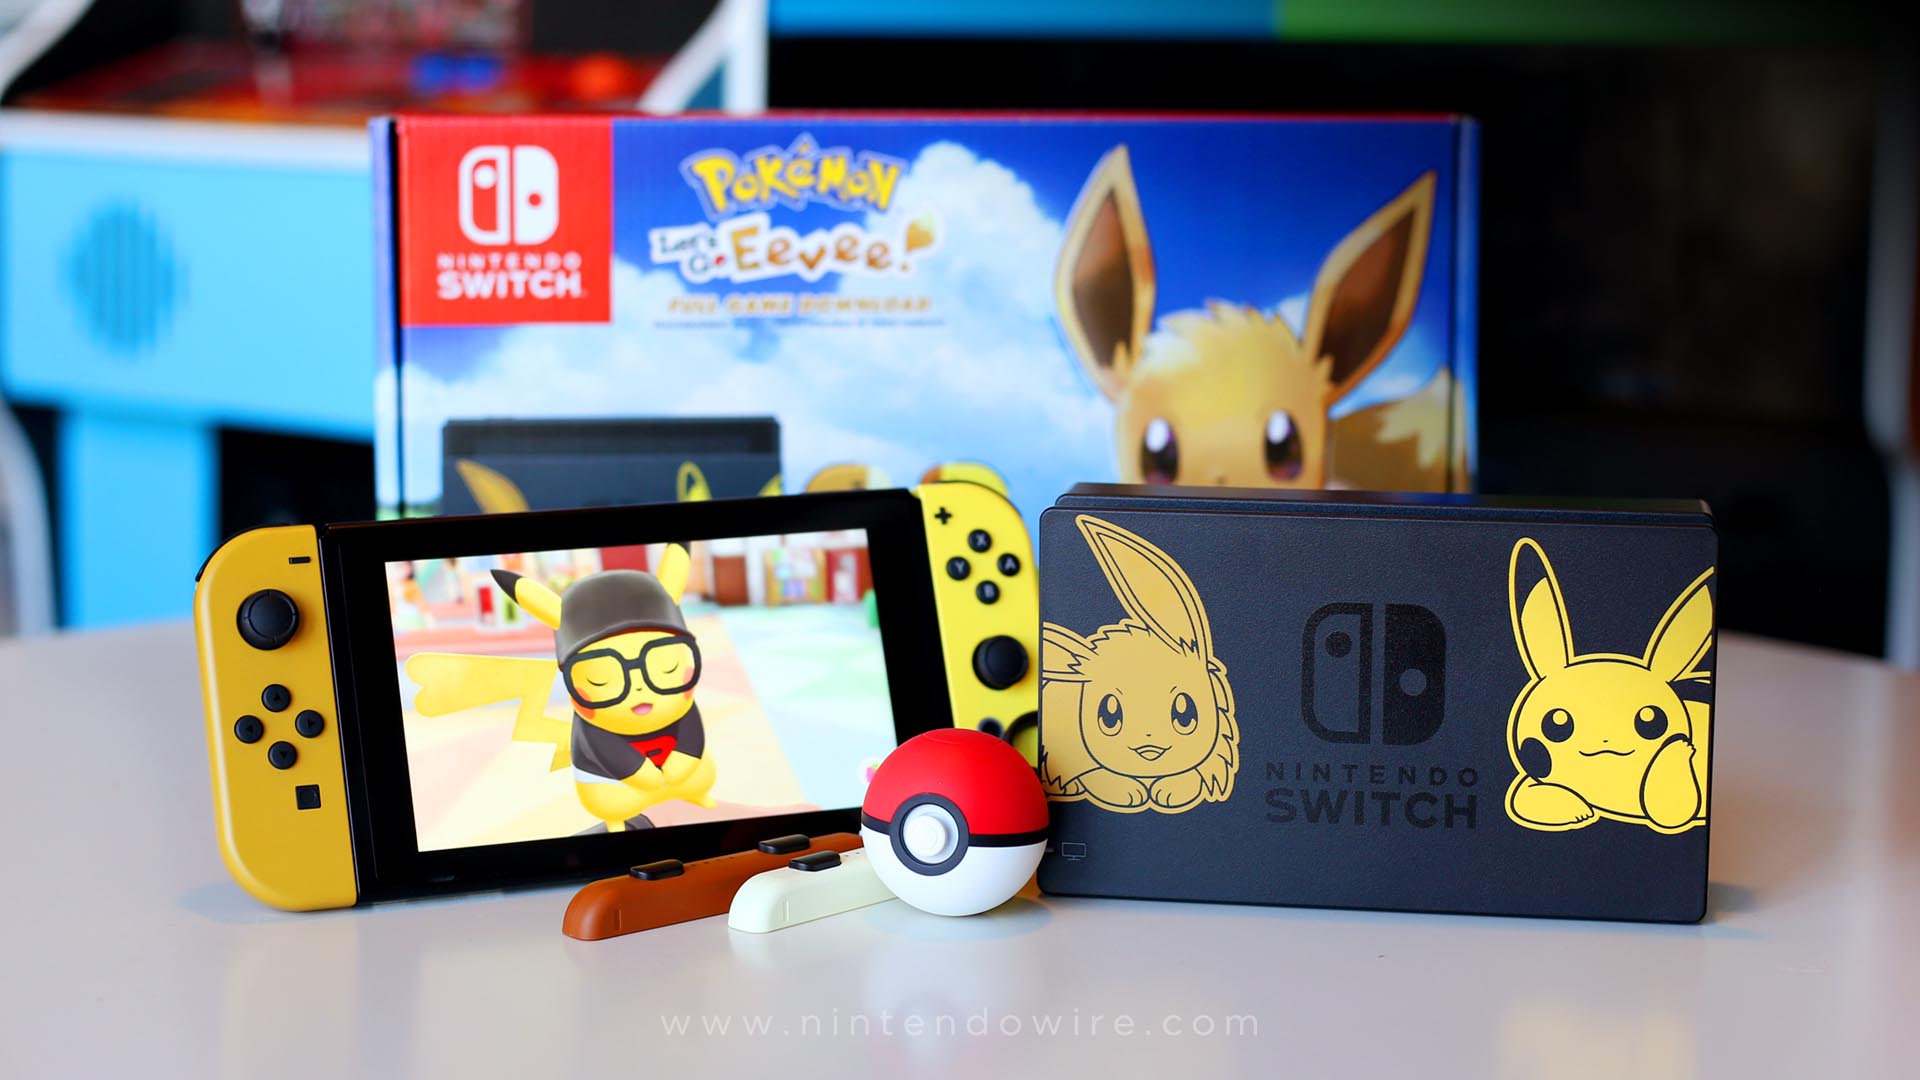 Go nintendo switch. Игры про покемонов на Нинтендо свитч. Нинтендо Пикачу. Nintendo Switch Pokemon Edition. Nintendo Switch OLED Pokemon Edition.